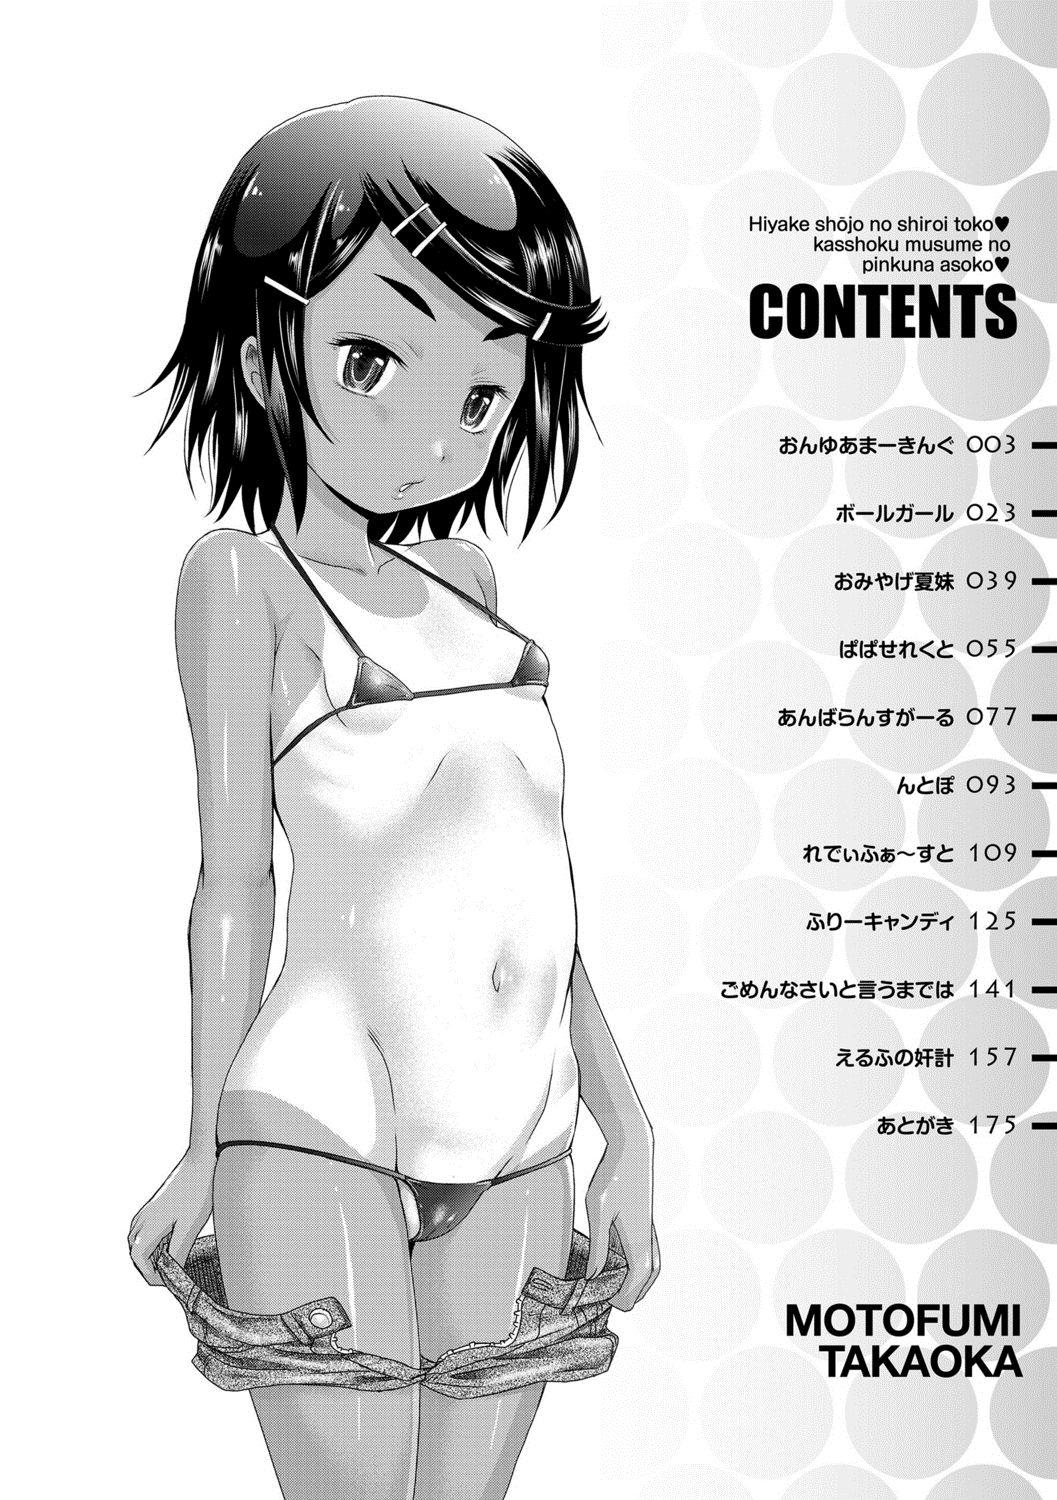 Spy Hiyake Shoujo no Shiroi Toko Kasshoku Musume no Pinkuna Asoko Clothed Sex - Page 4